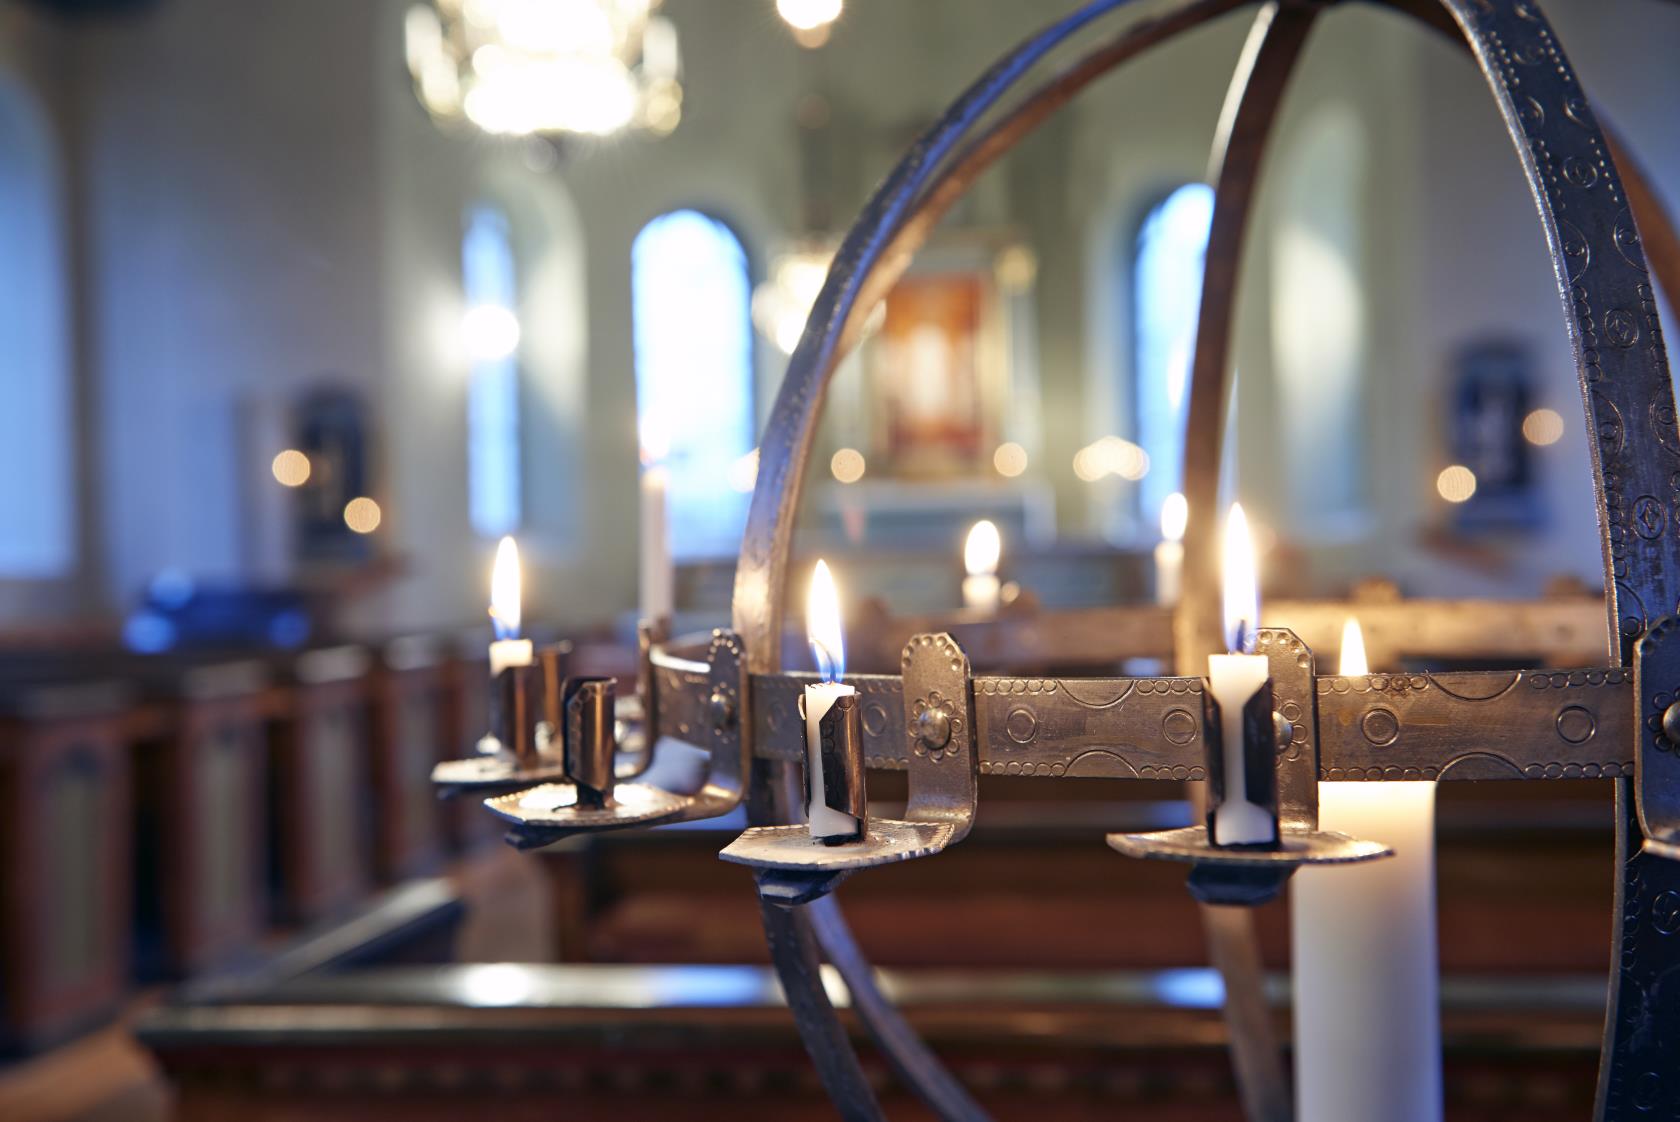 Ljusbärare med tända ljus i Malexanders kyrka.